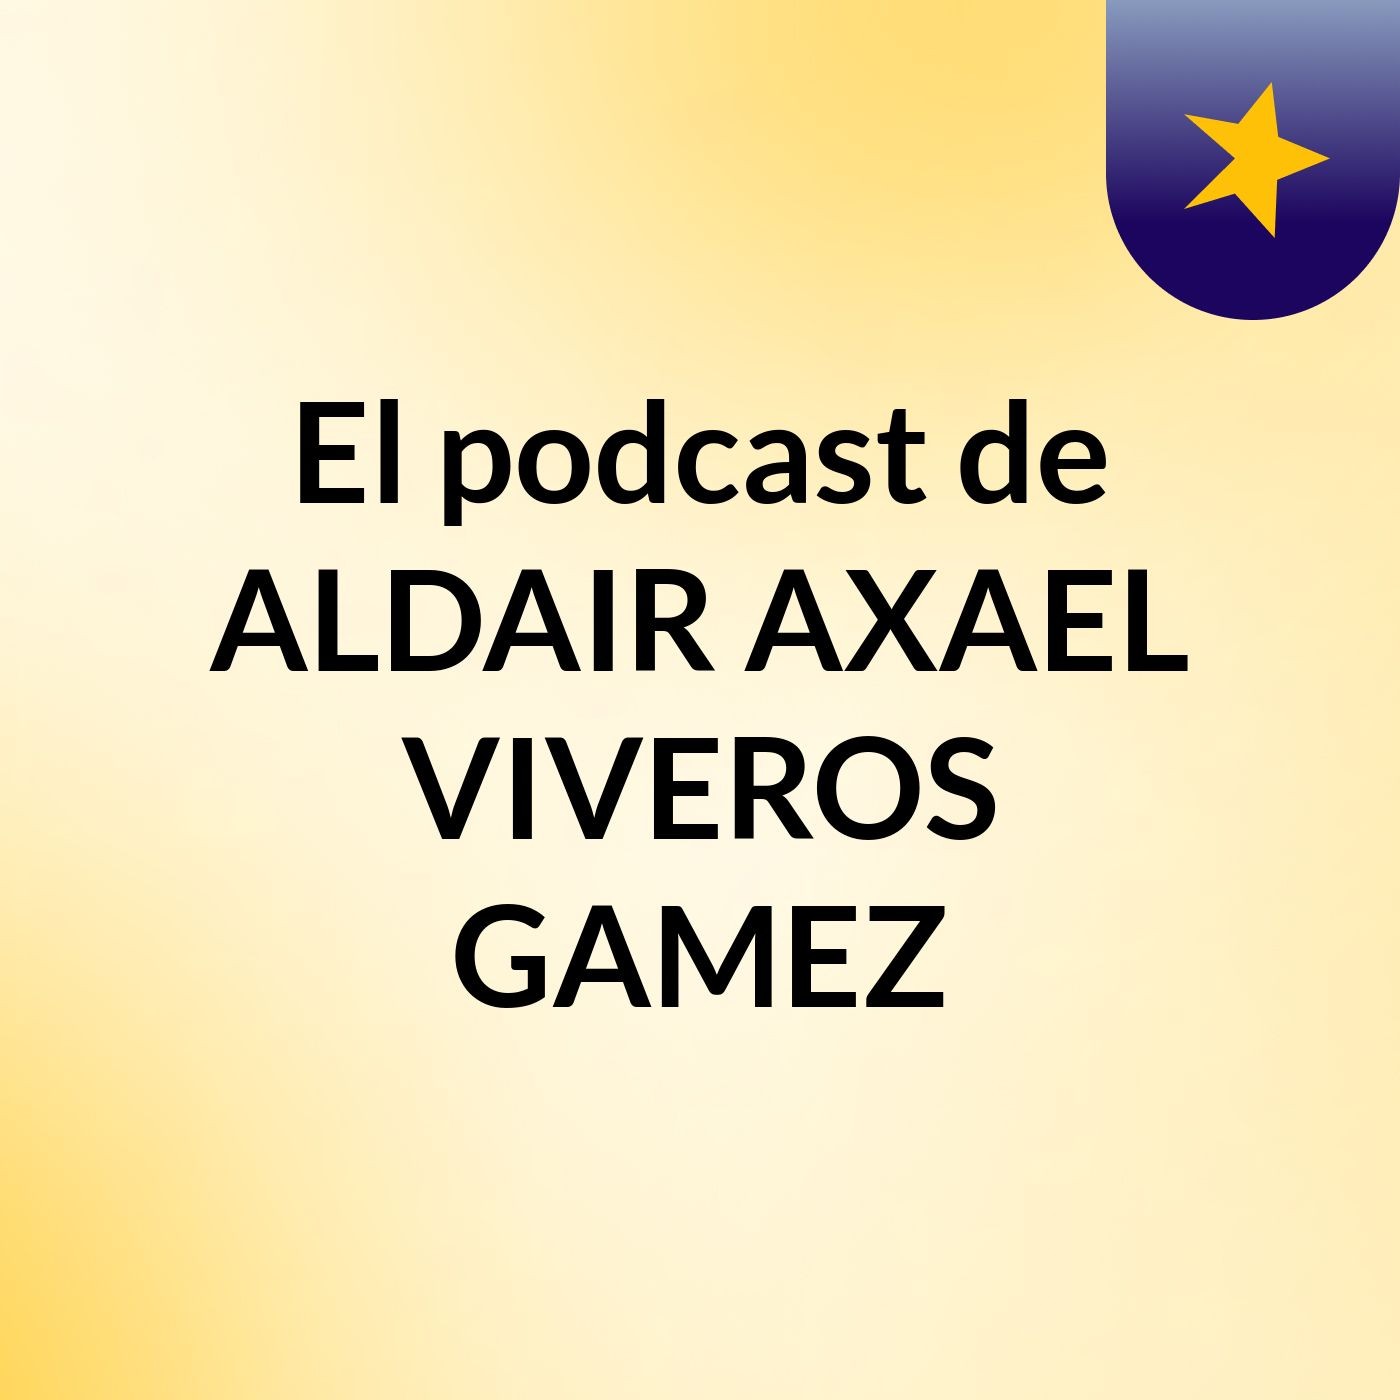 El podcast de ALDAIR AXAEL VIVEROS GAMEZ